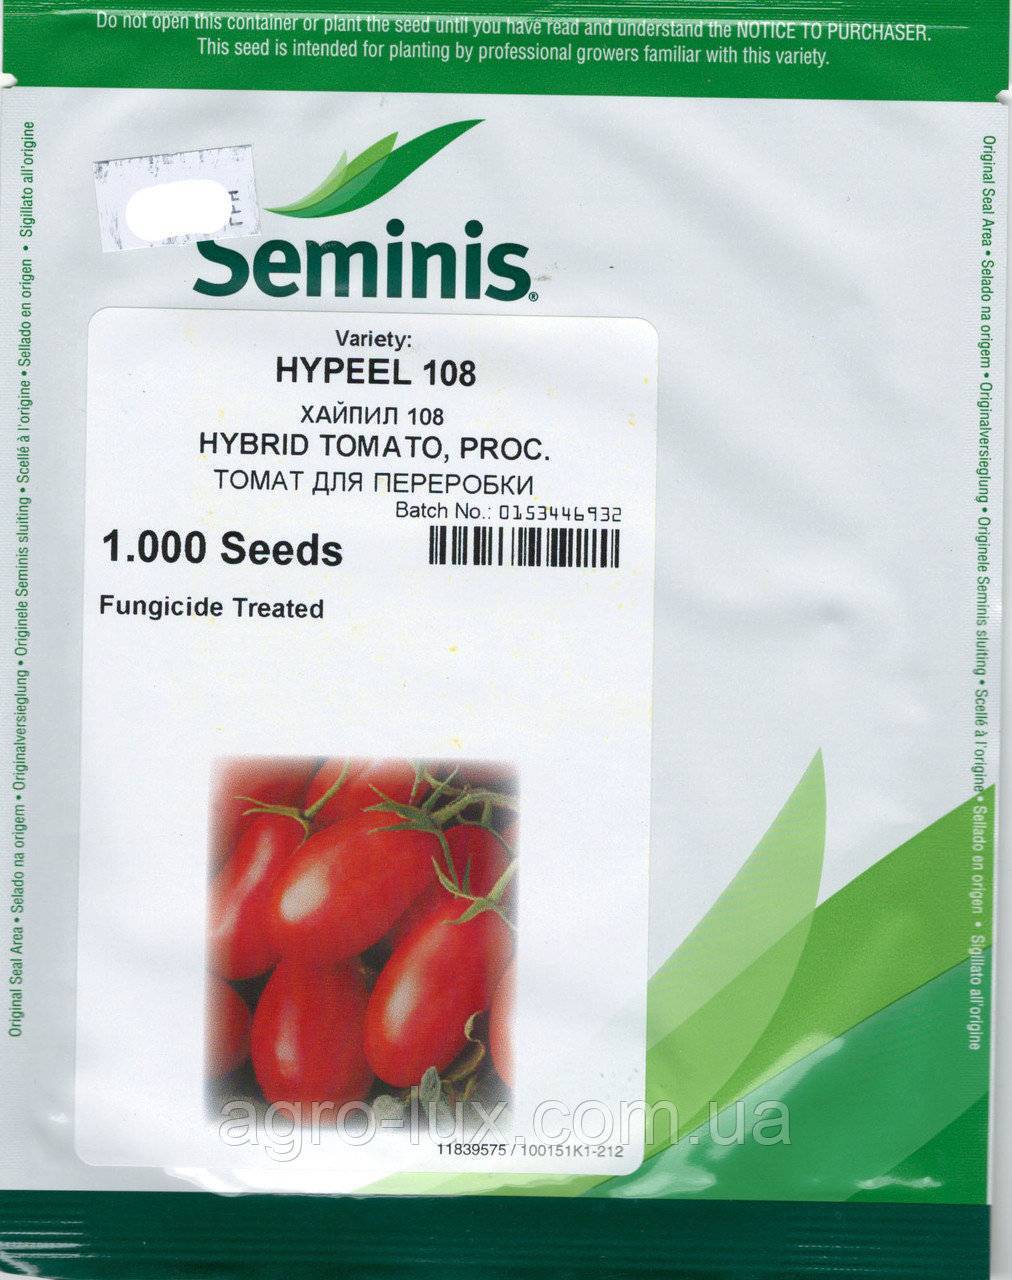 Описание гибридного томата Хайпил 108 f1, правила выращивания и защита от вредителей